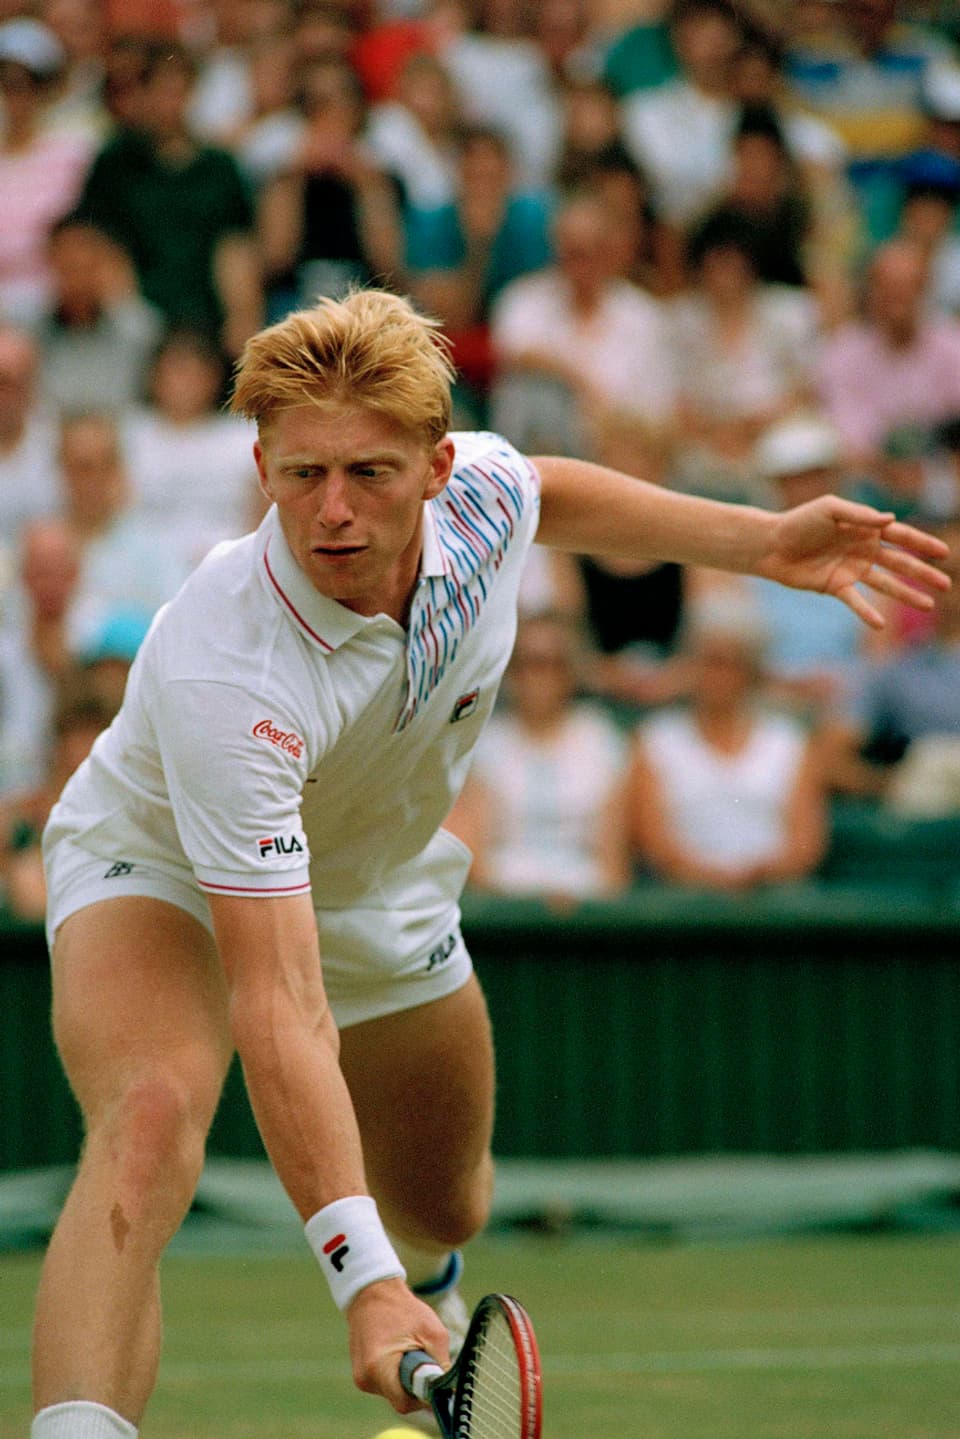 Boris Beckers Outfit enthielt zahlreiche bunte Elemente und Werbebanner.